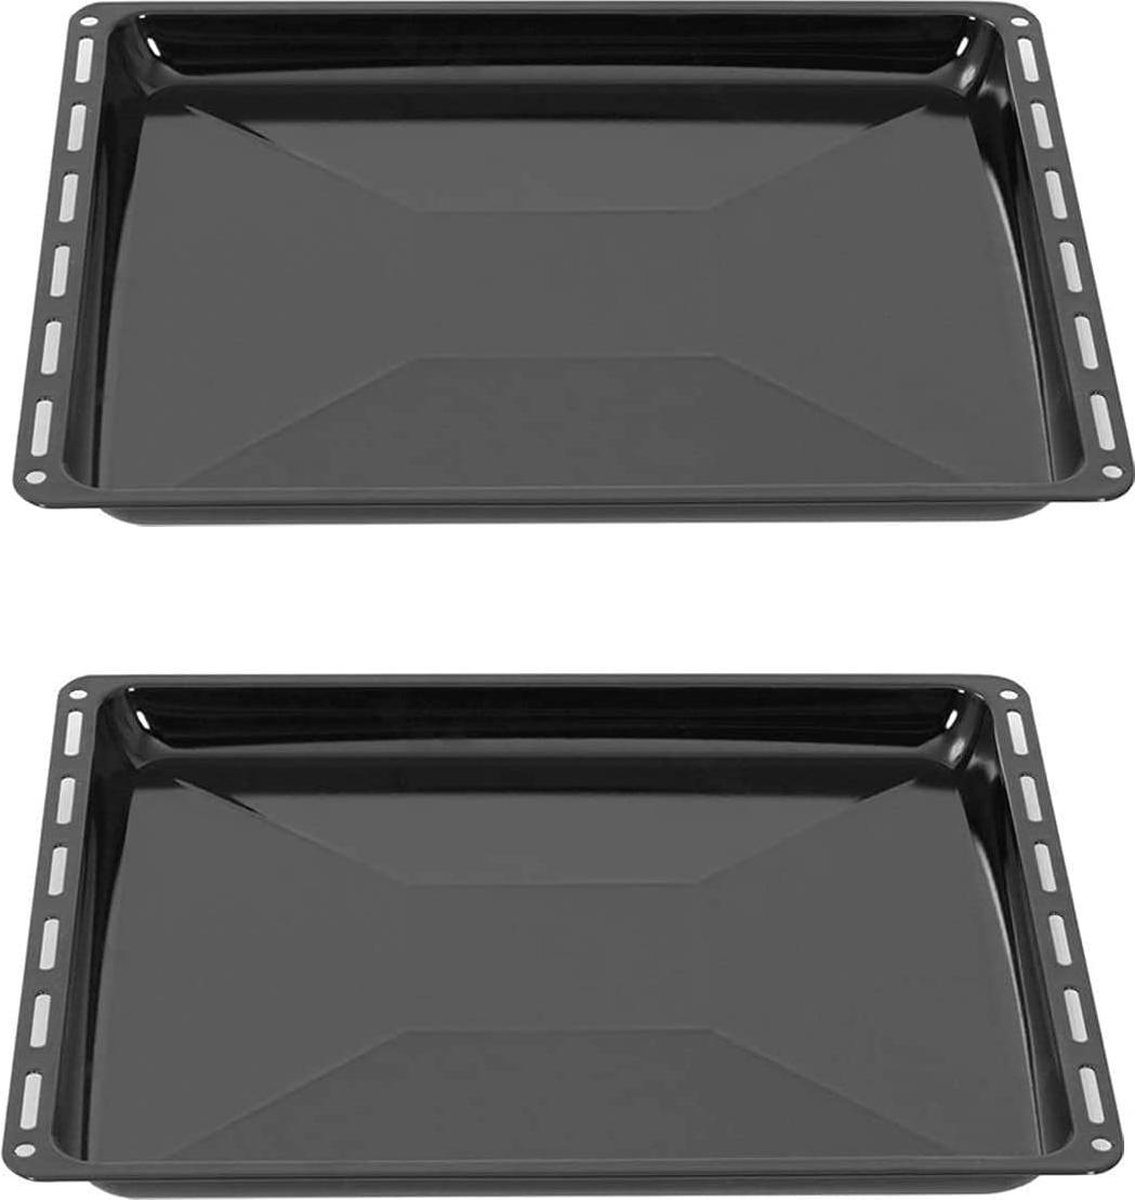 ICQN Oven Bakplaat Set - 2 stuks - 422 x 375 x 31 mm - Geëmailleerd - ICQN